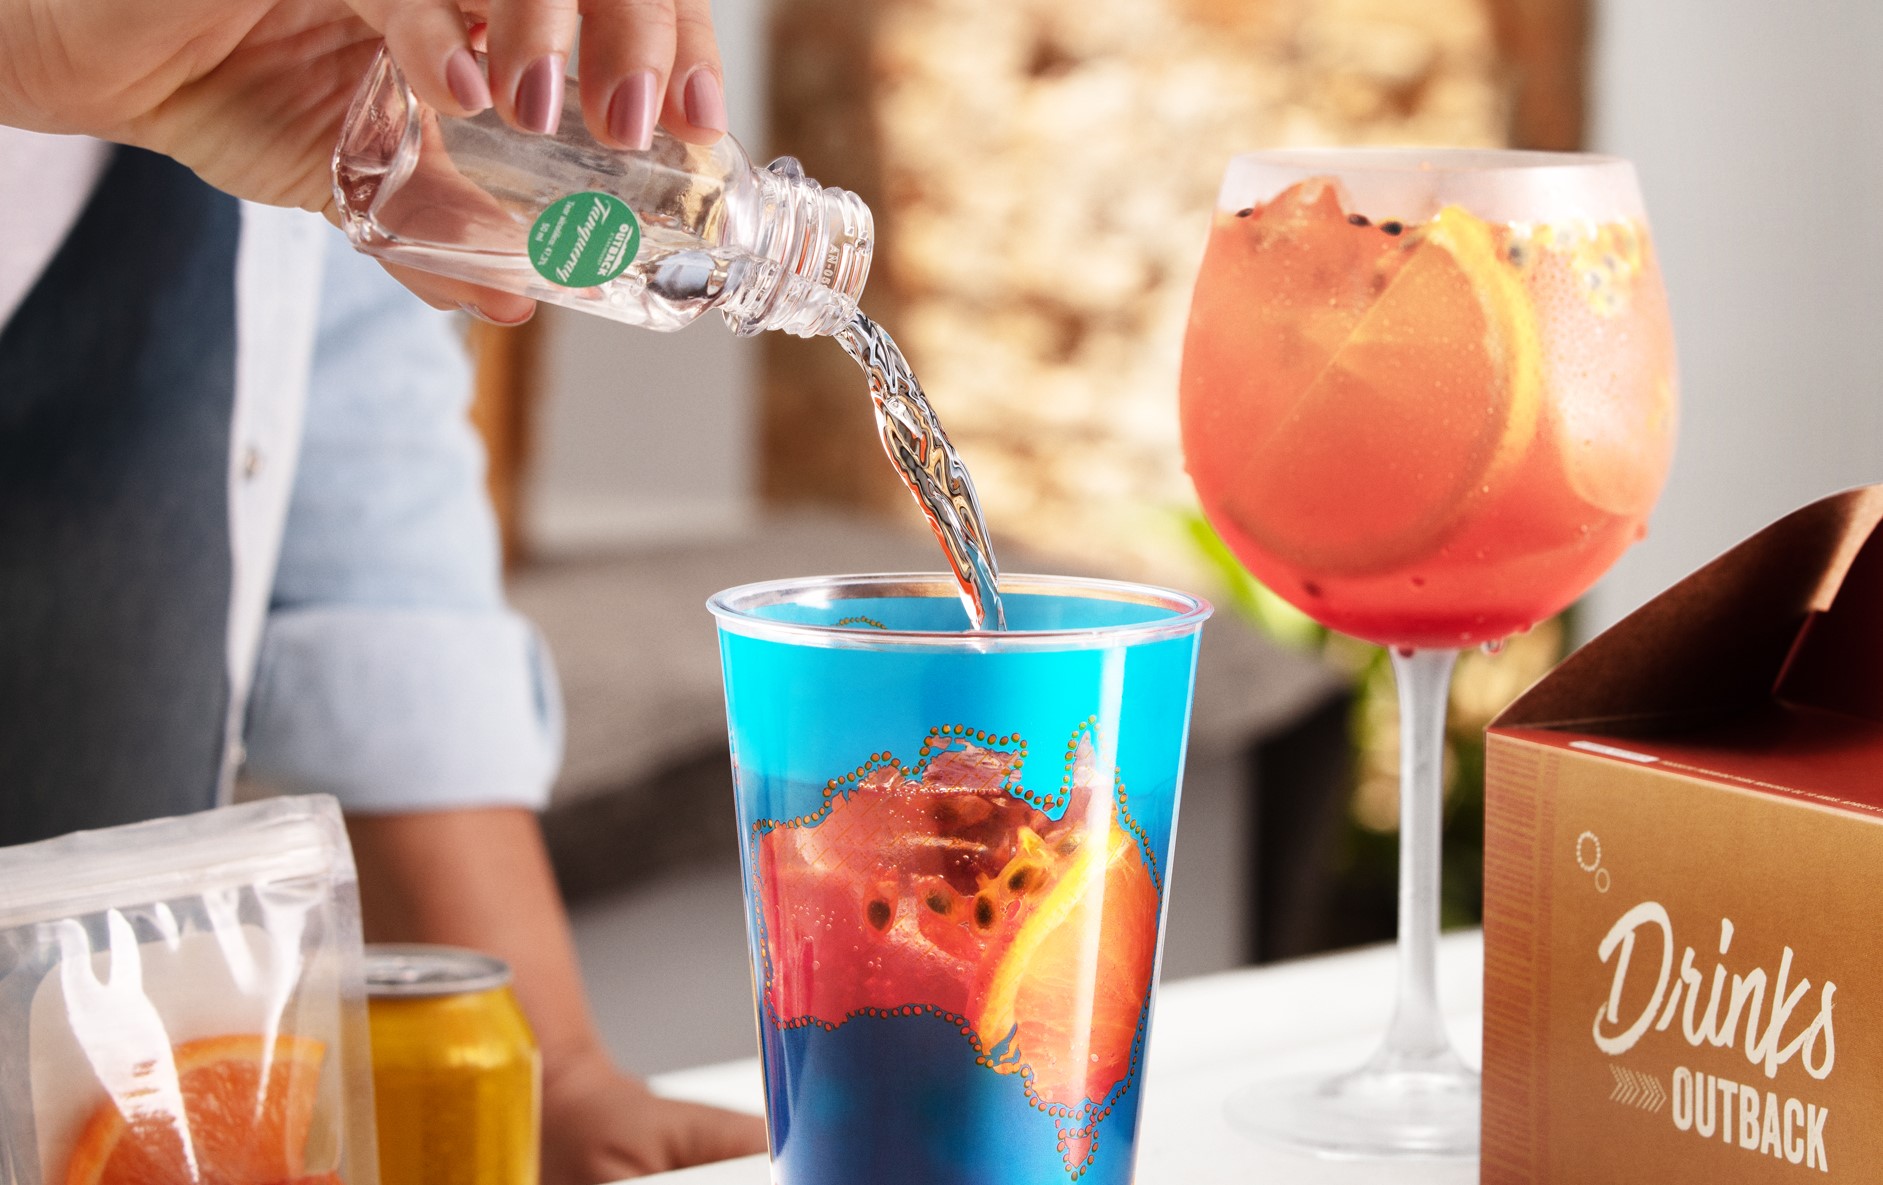 Outback lança experiência Do It Yourself para que clientes façam drinks da marca em casa